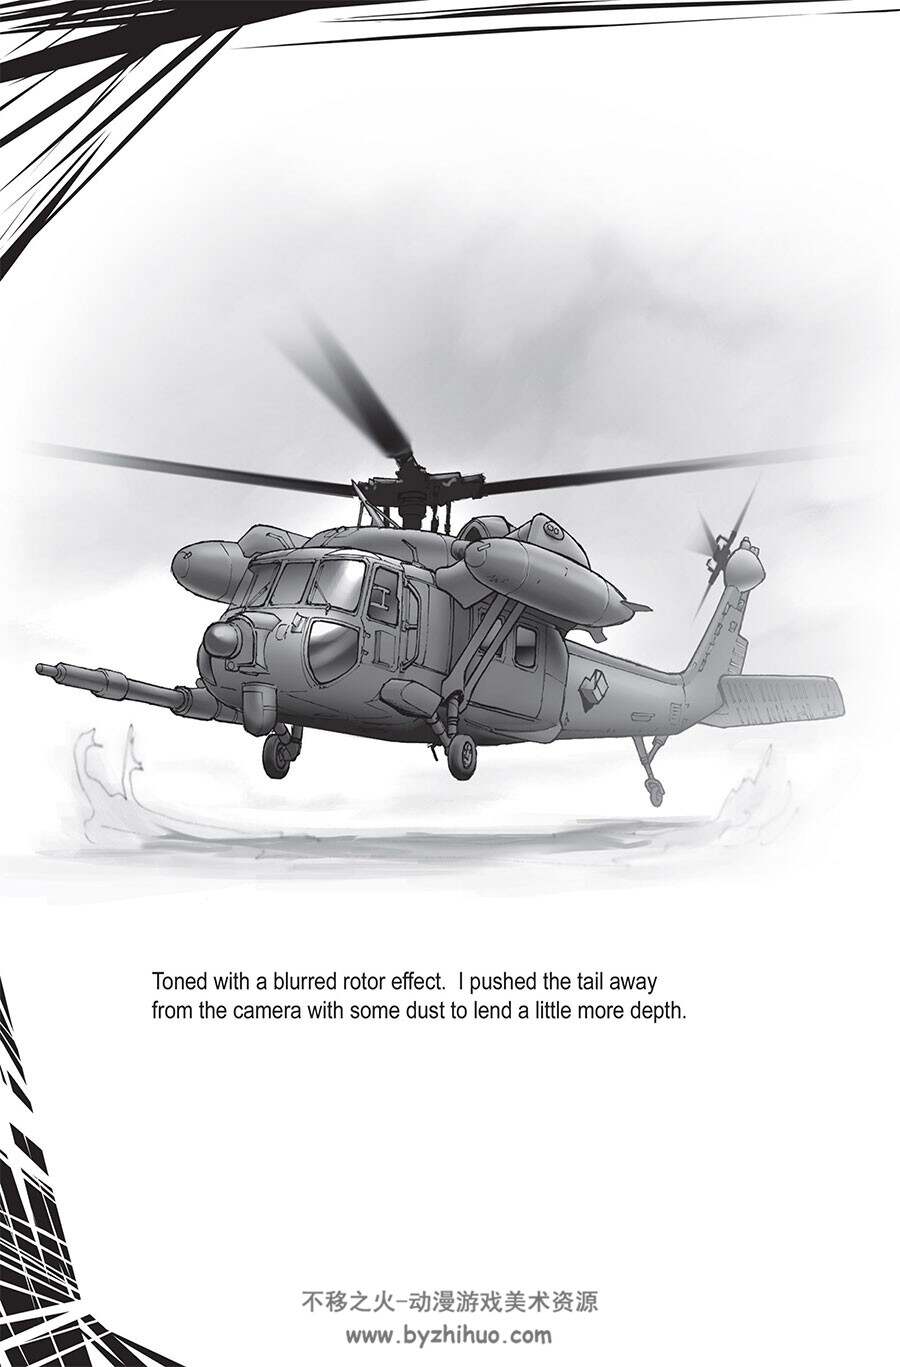 How to Draw Modern Warfare 绘制现代战争 Ben Dunn 武器载具绘画教学网盘下载